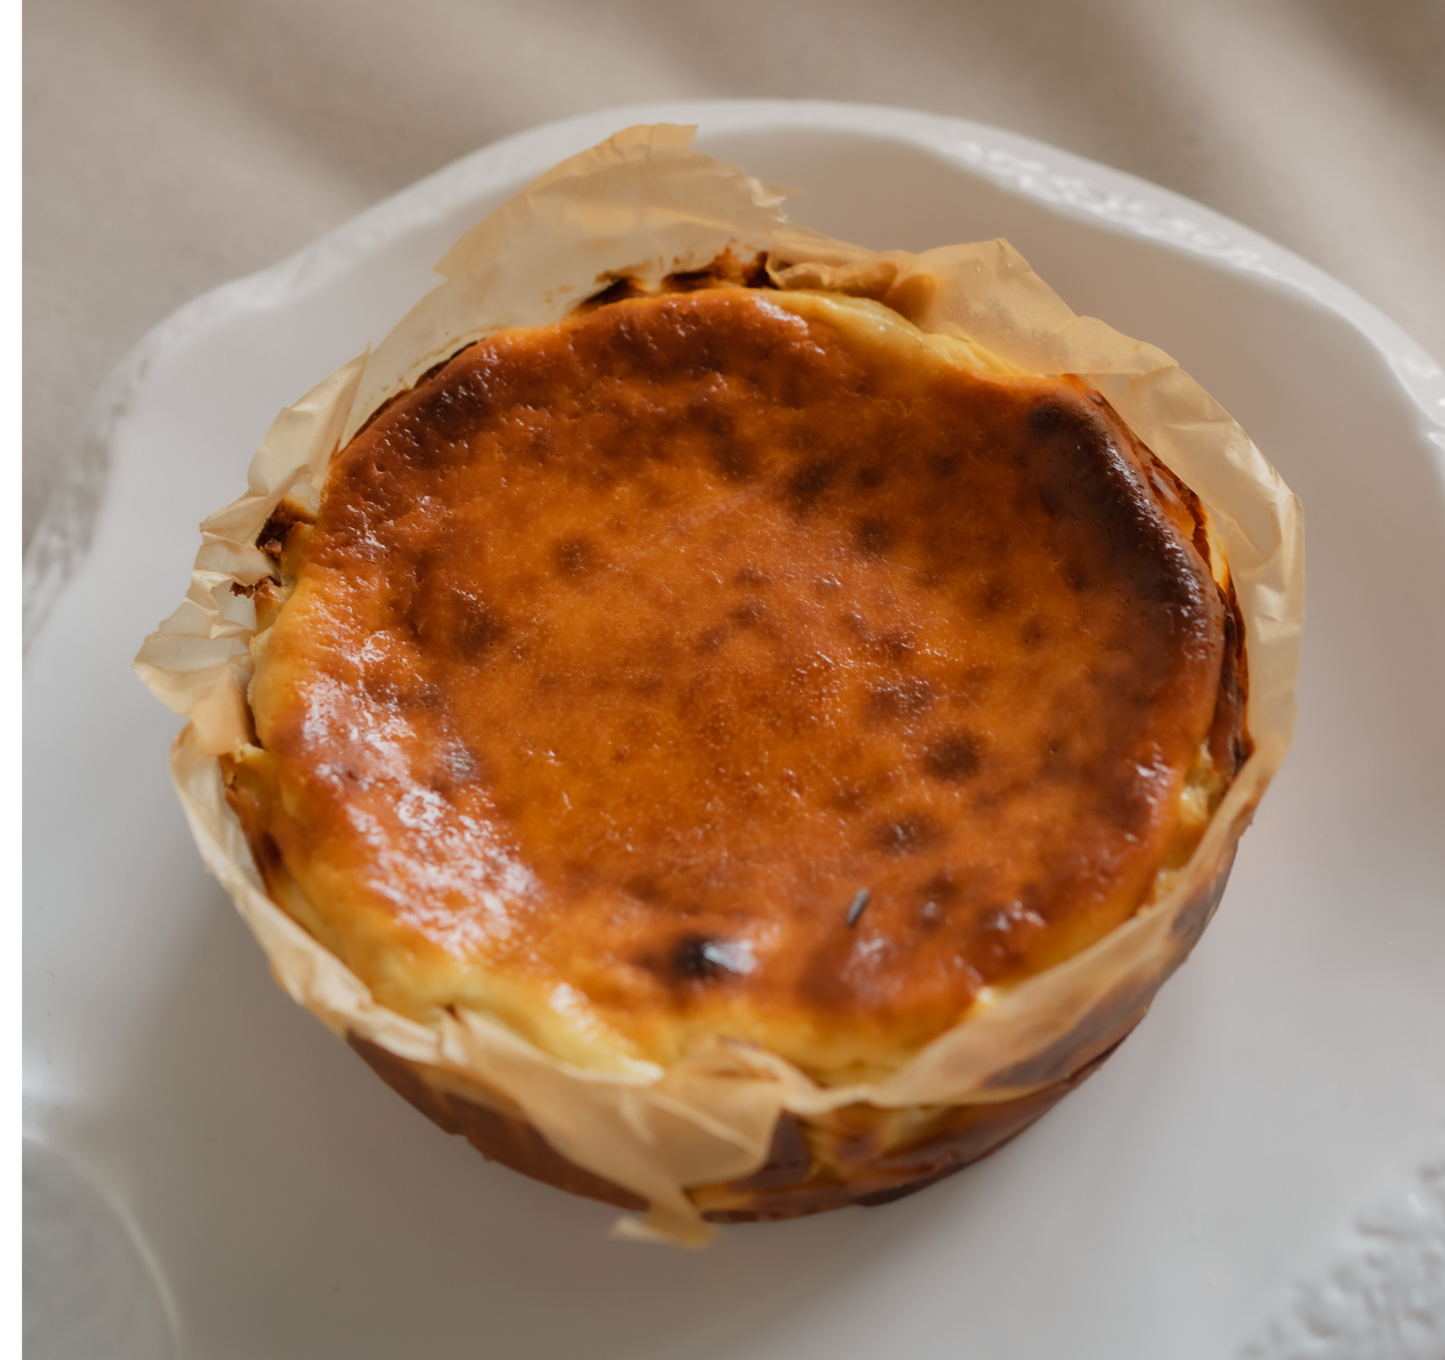 The Basque Cheesecake